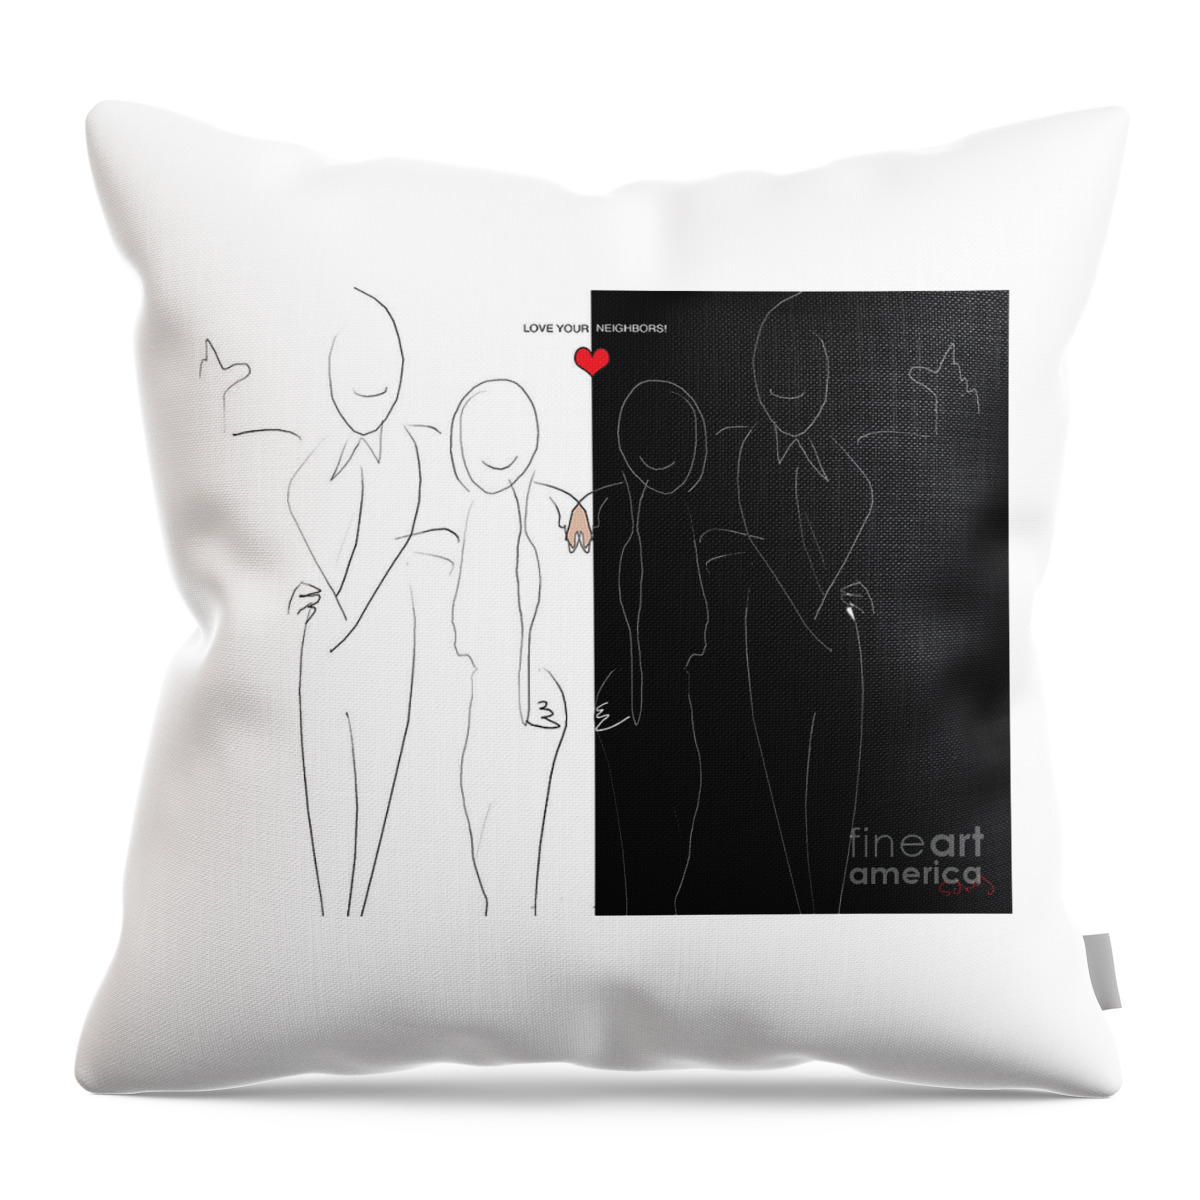 Love Throw Pillow featuring the digital art Love your Neighbors by Gabrielle Schertz